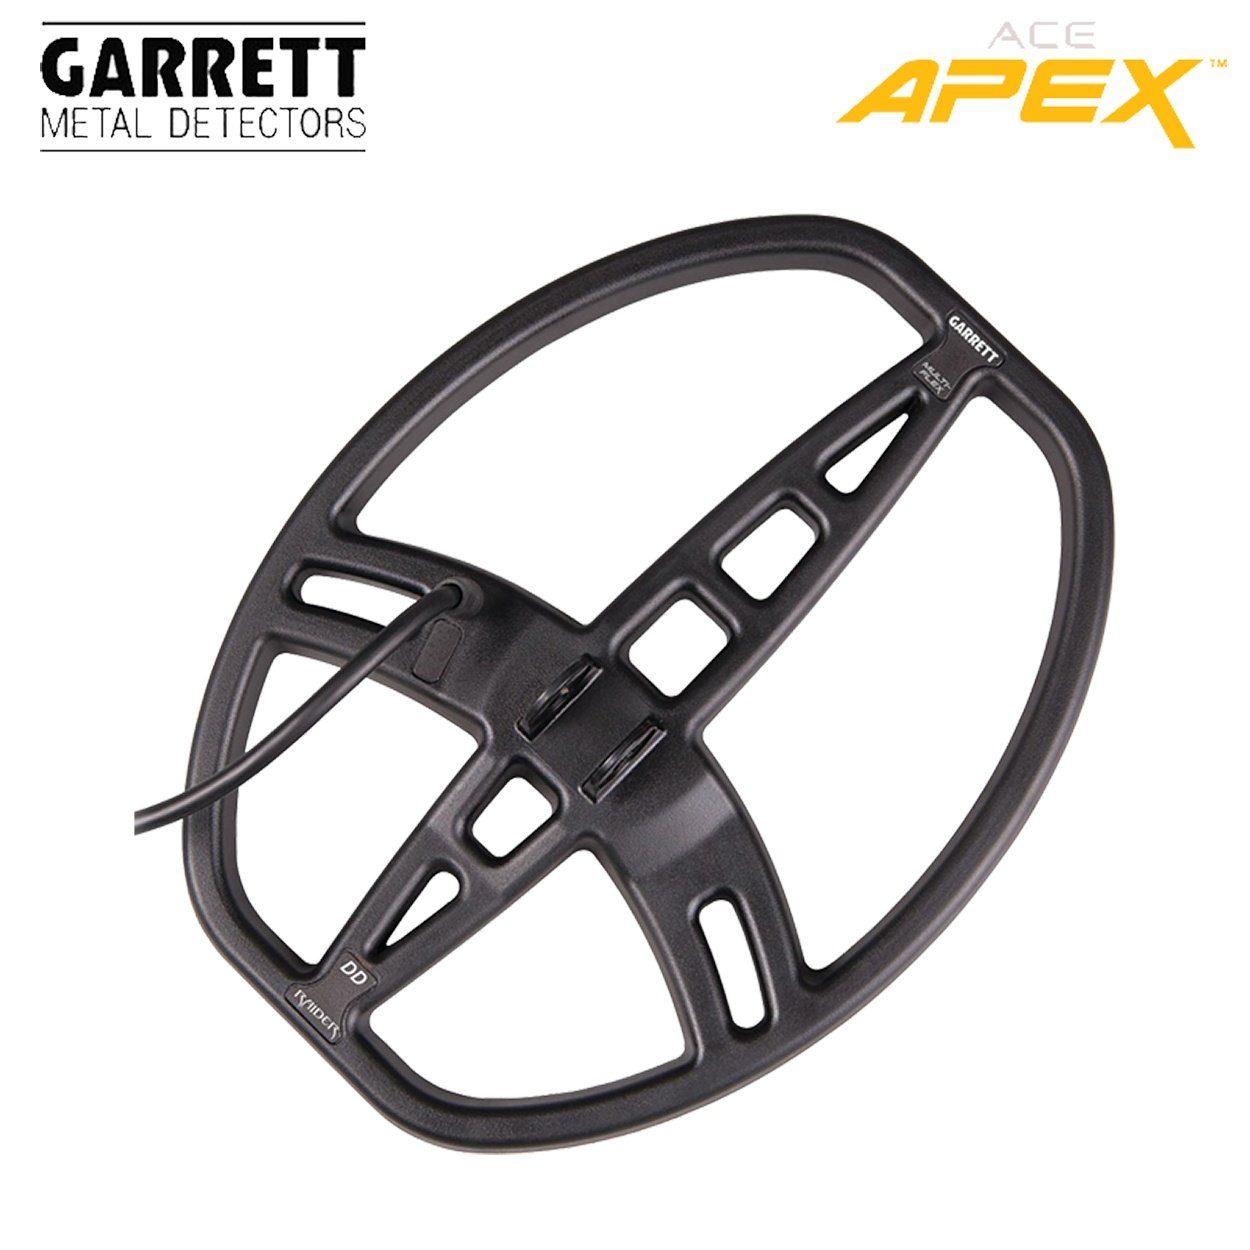 Pack) Garrett Ace Raider APEX Metalldetektor Metalldetektor (Wireless Garrett